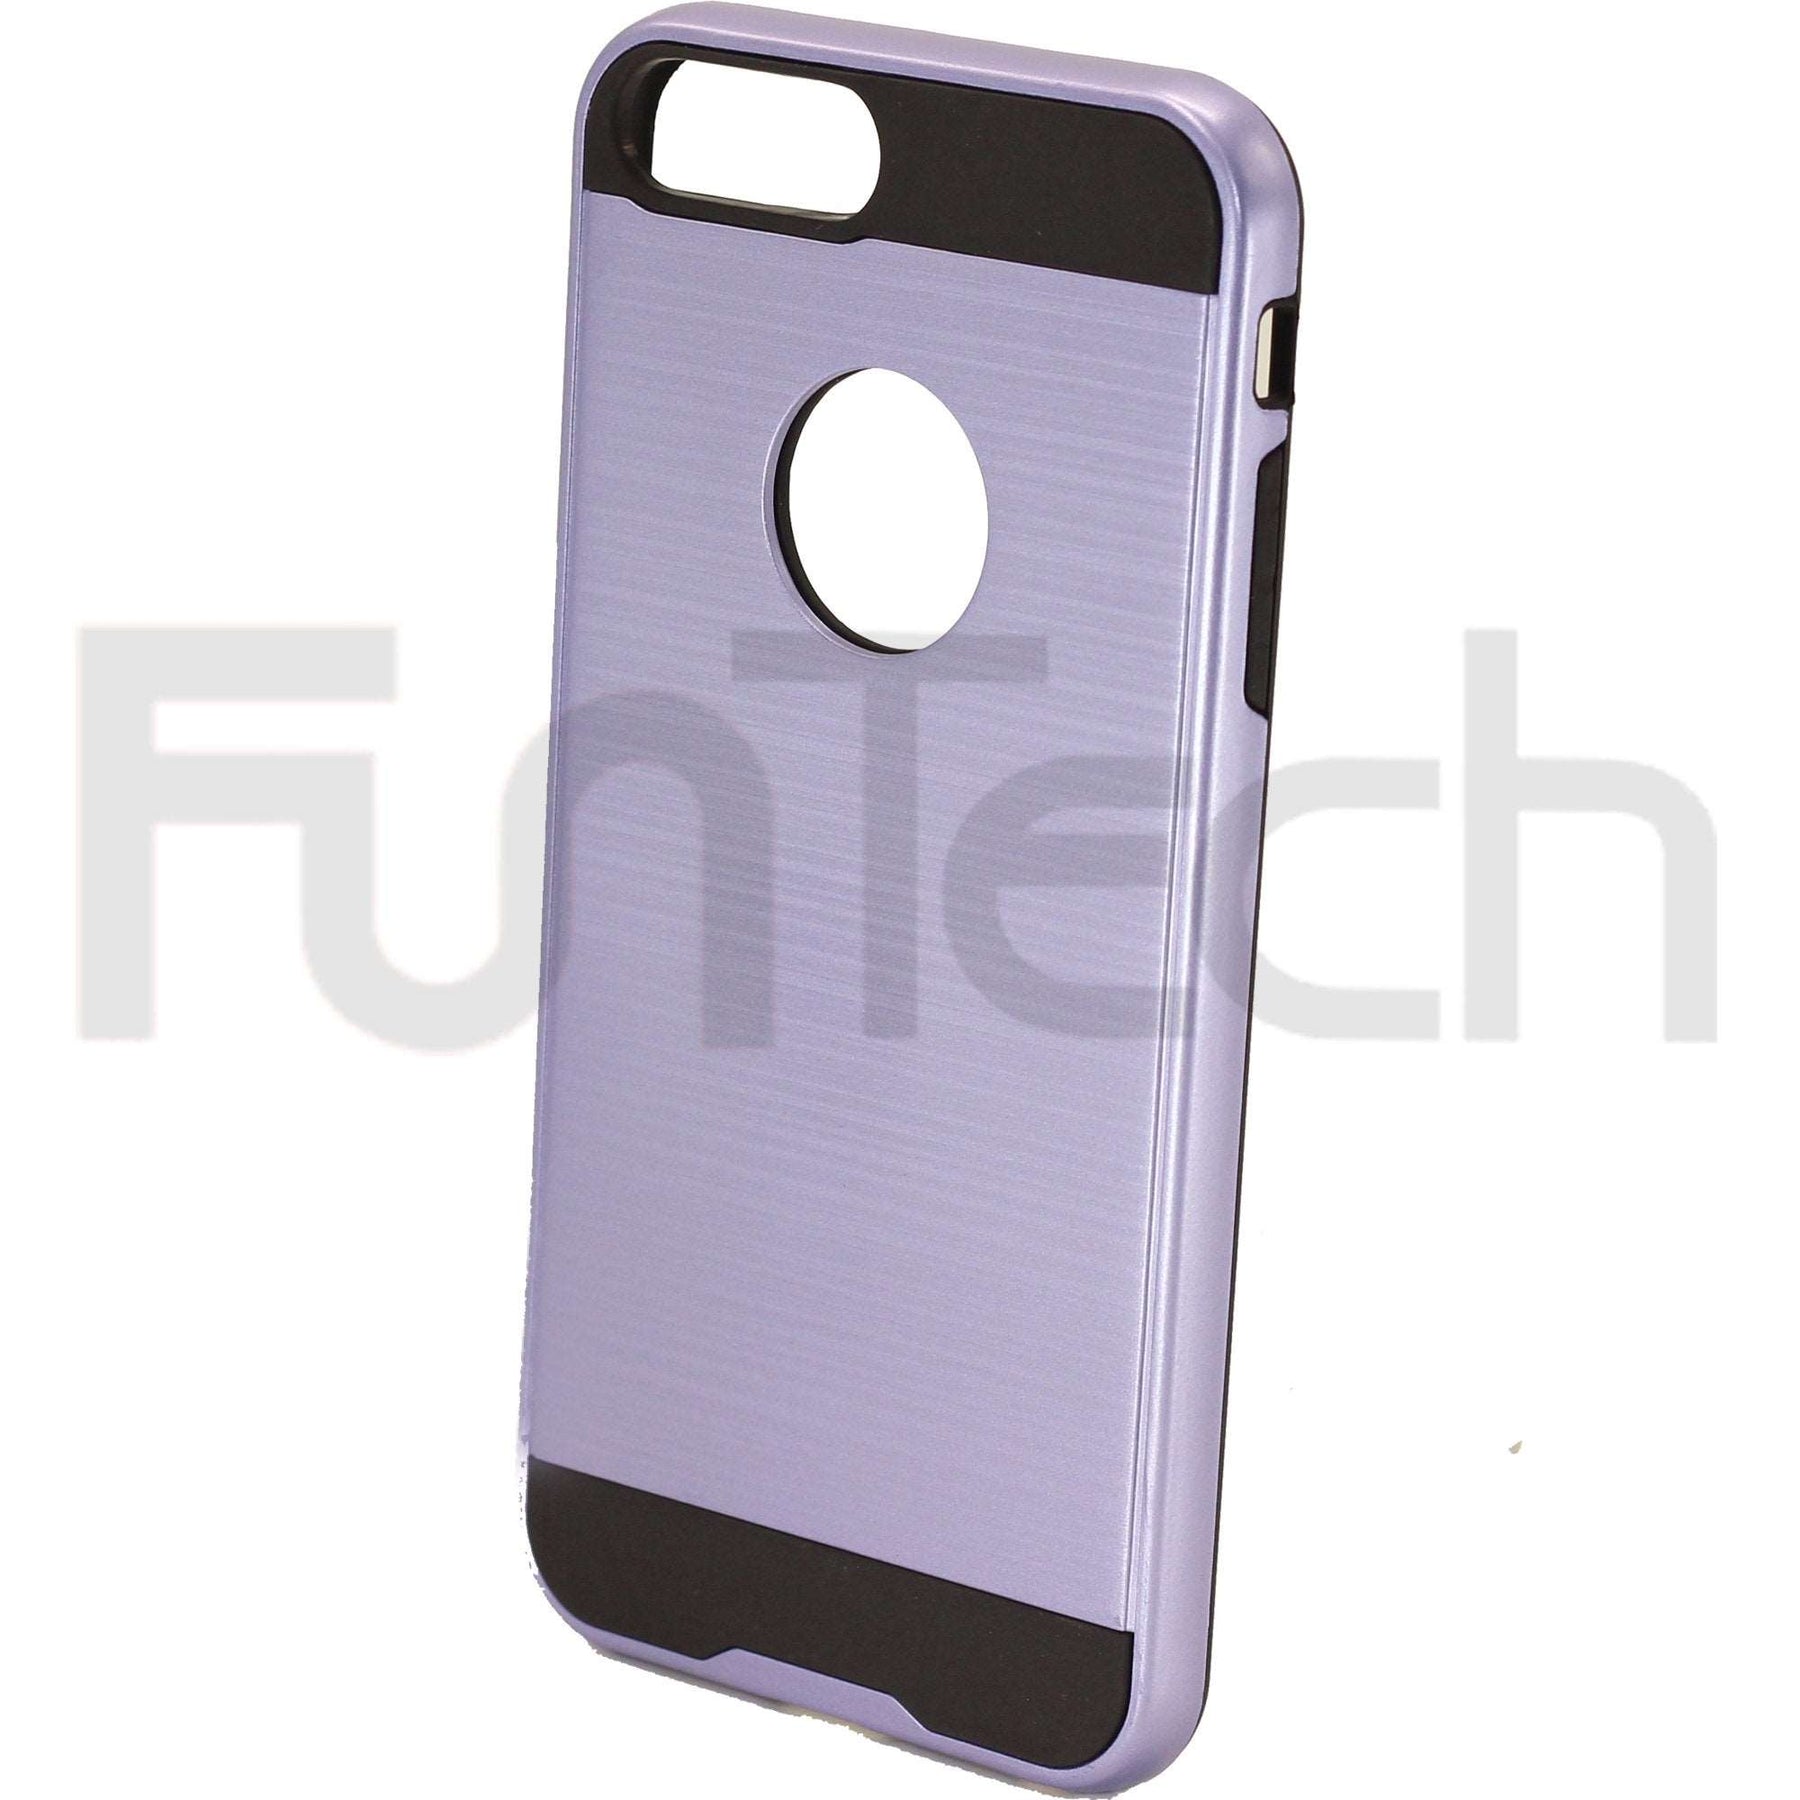 Apple iPhone 7/8 Plus Slim Armor Case Purple